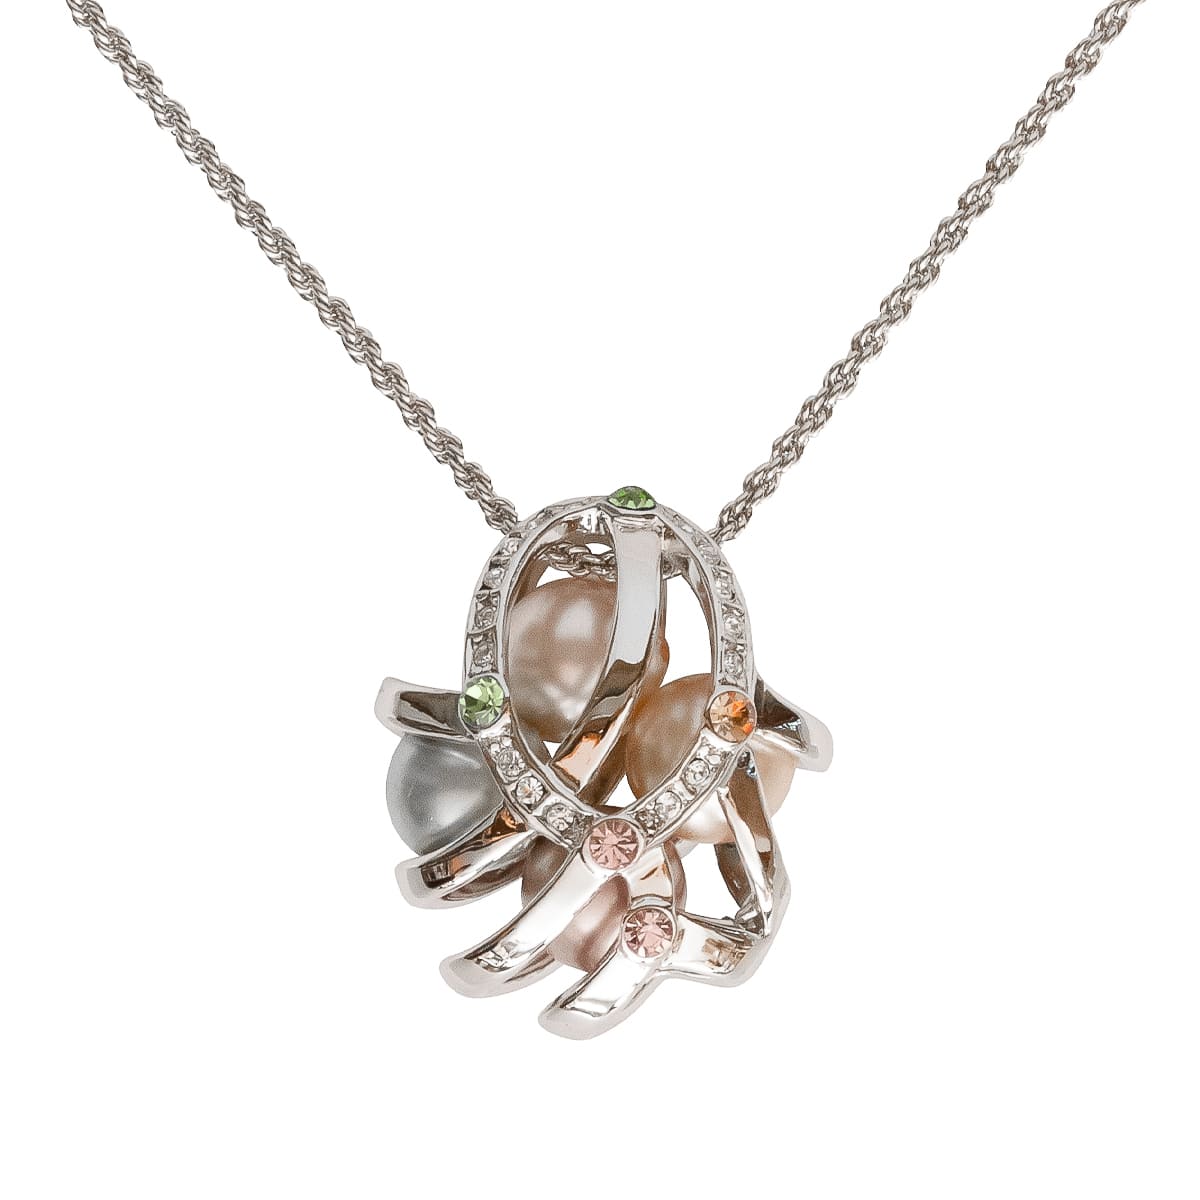 K.V. Fuchs Design Schmuck Damen Halskette in silber mit Perlen in beige, grün, rosa und Zirkonia in blau, grün, rosa, topas, weiß »K-2432«